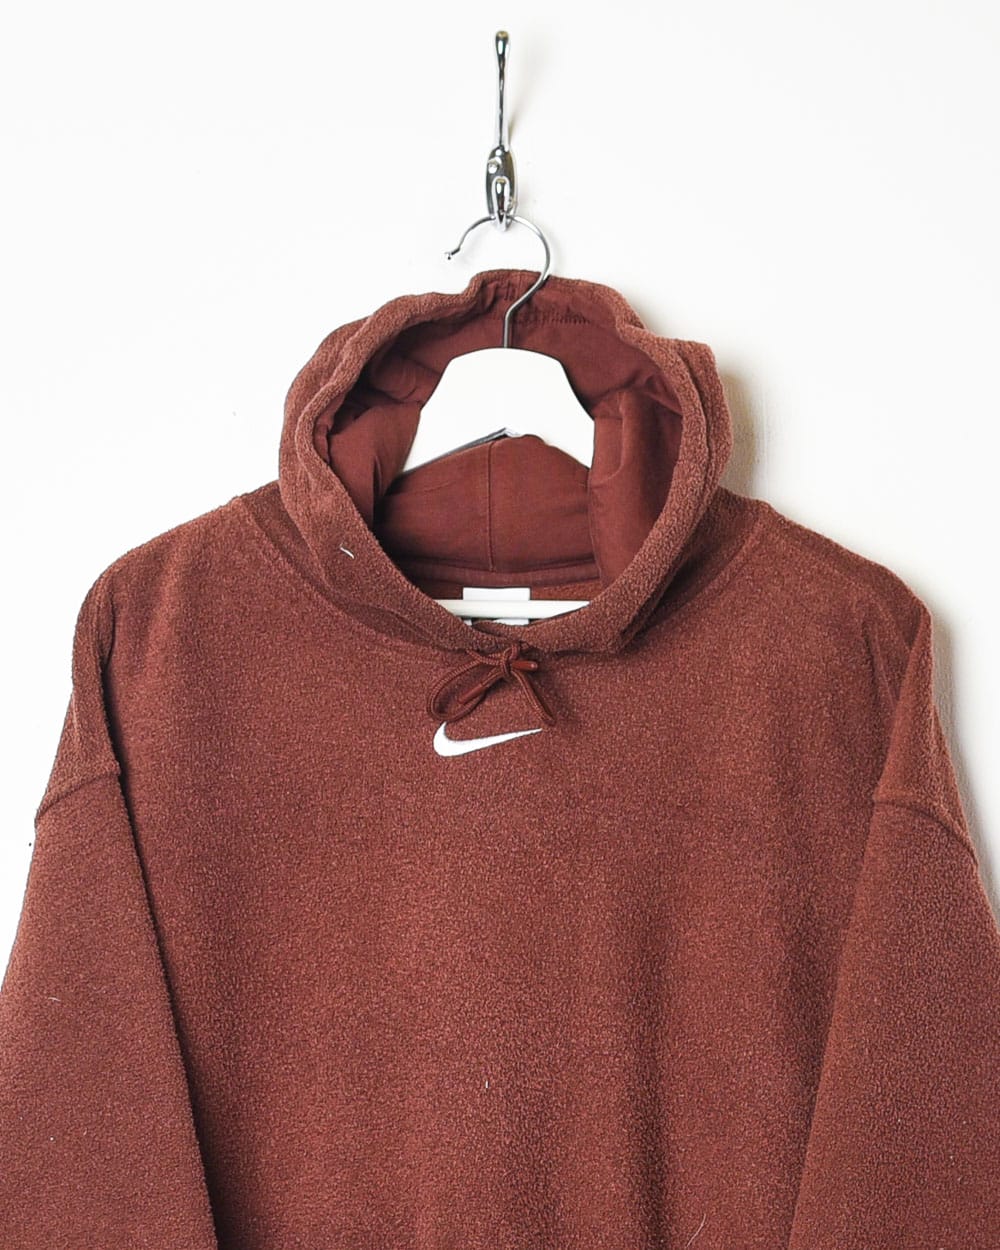 Brown Nike Fleece Hoodie - Medium